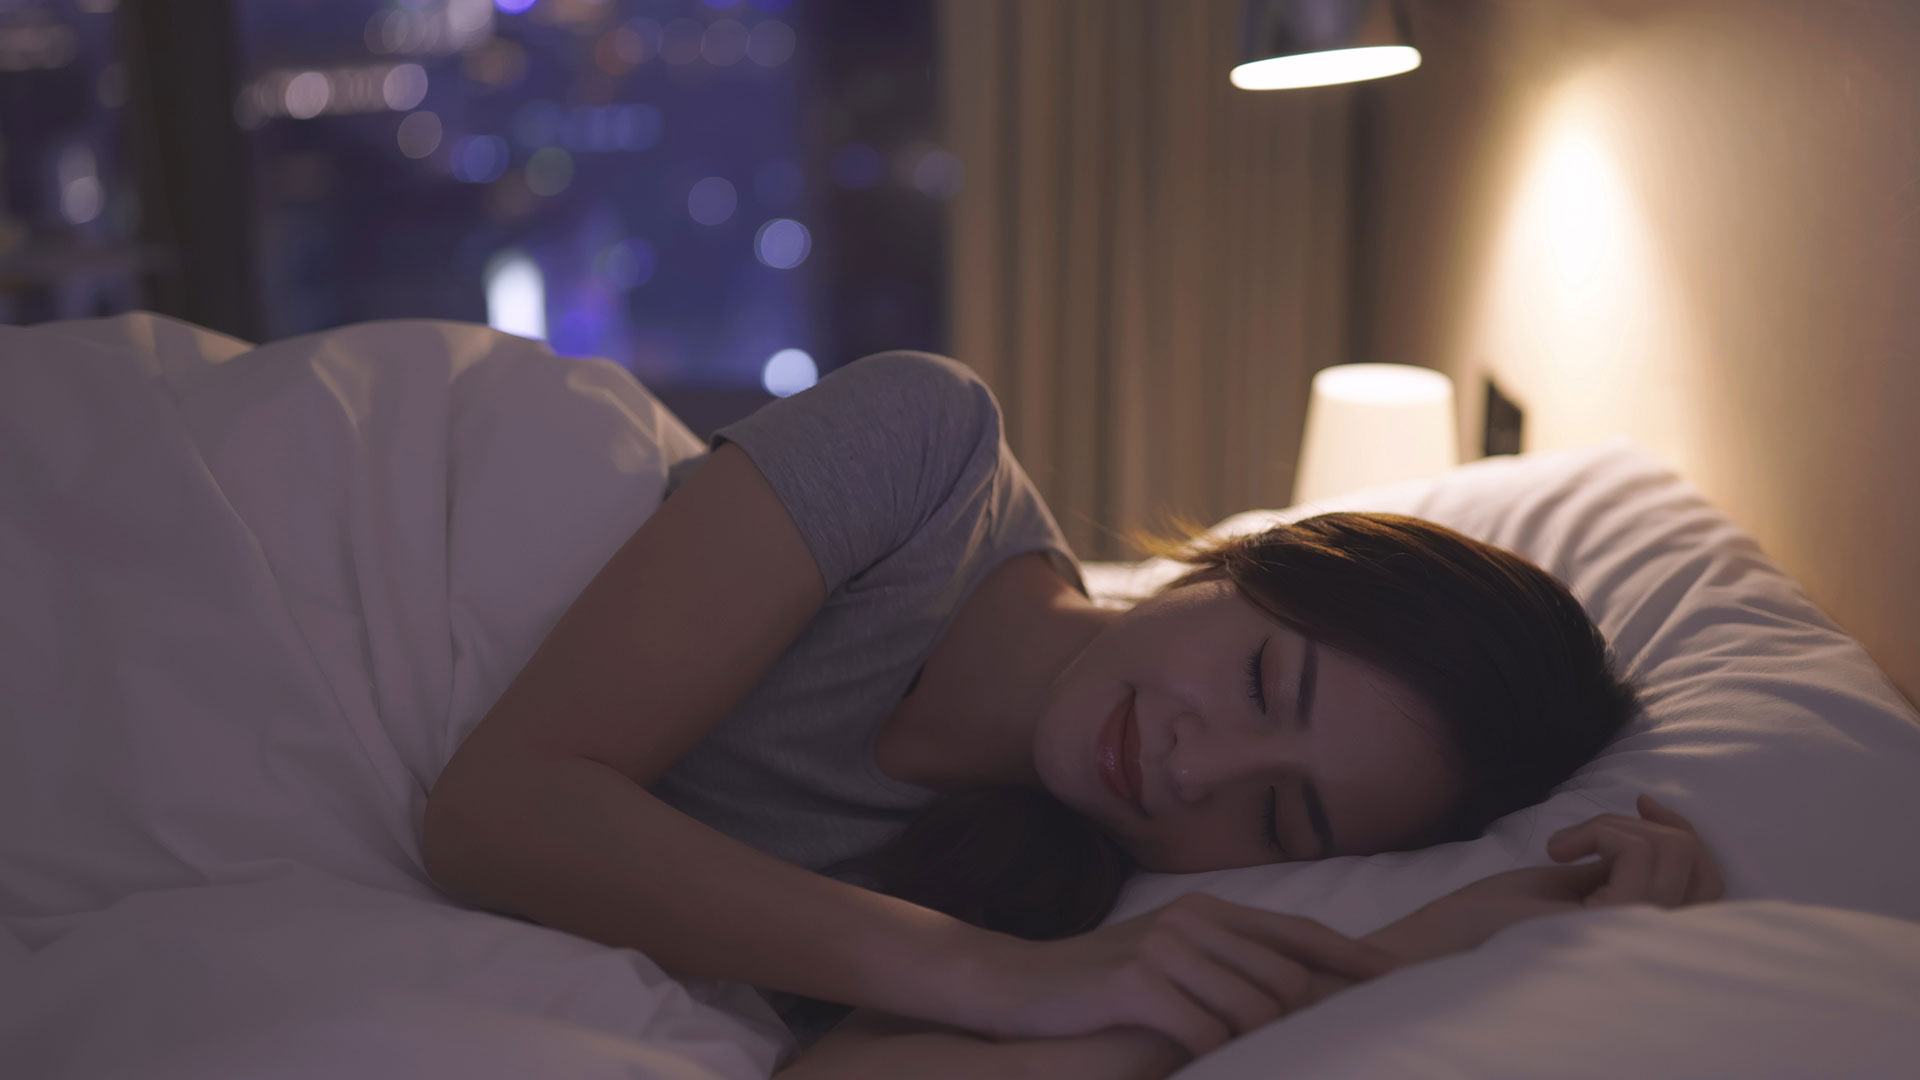 La oscuridad en la habitación para domir facilitará la liberación de melatonina, lo que inducirá el sueño de forma natural (Getty Images)